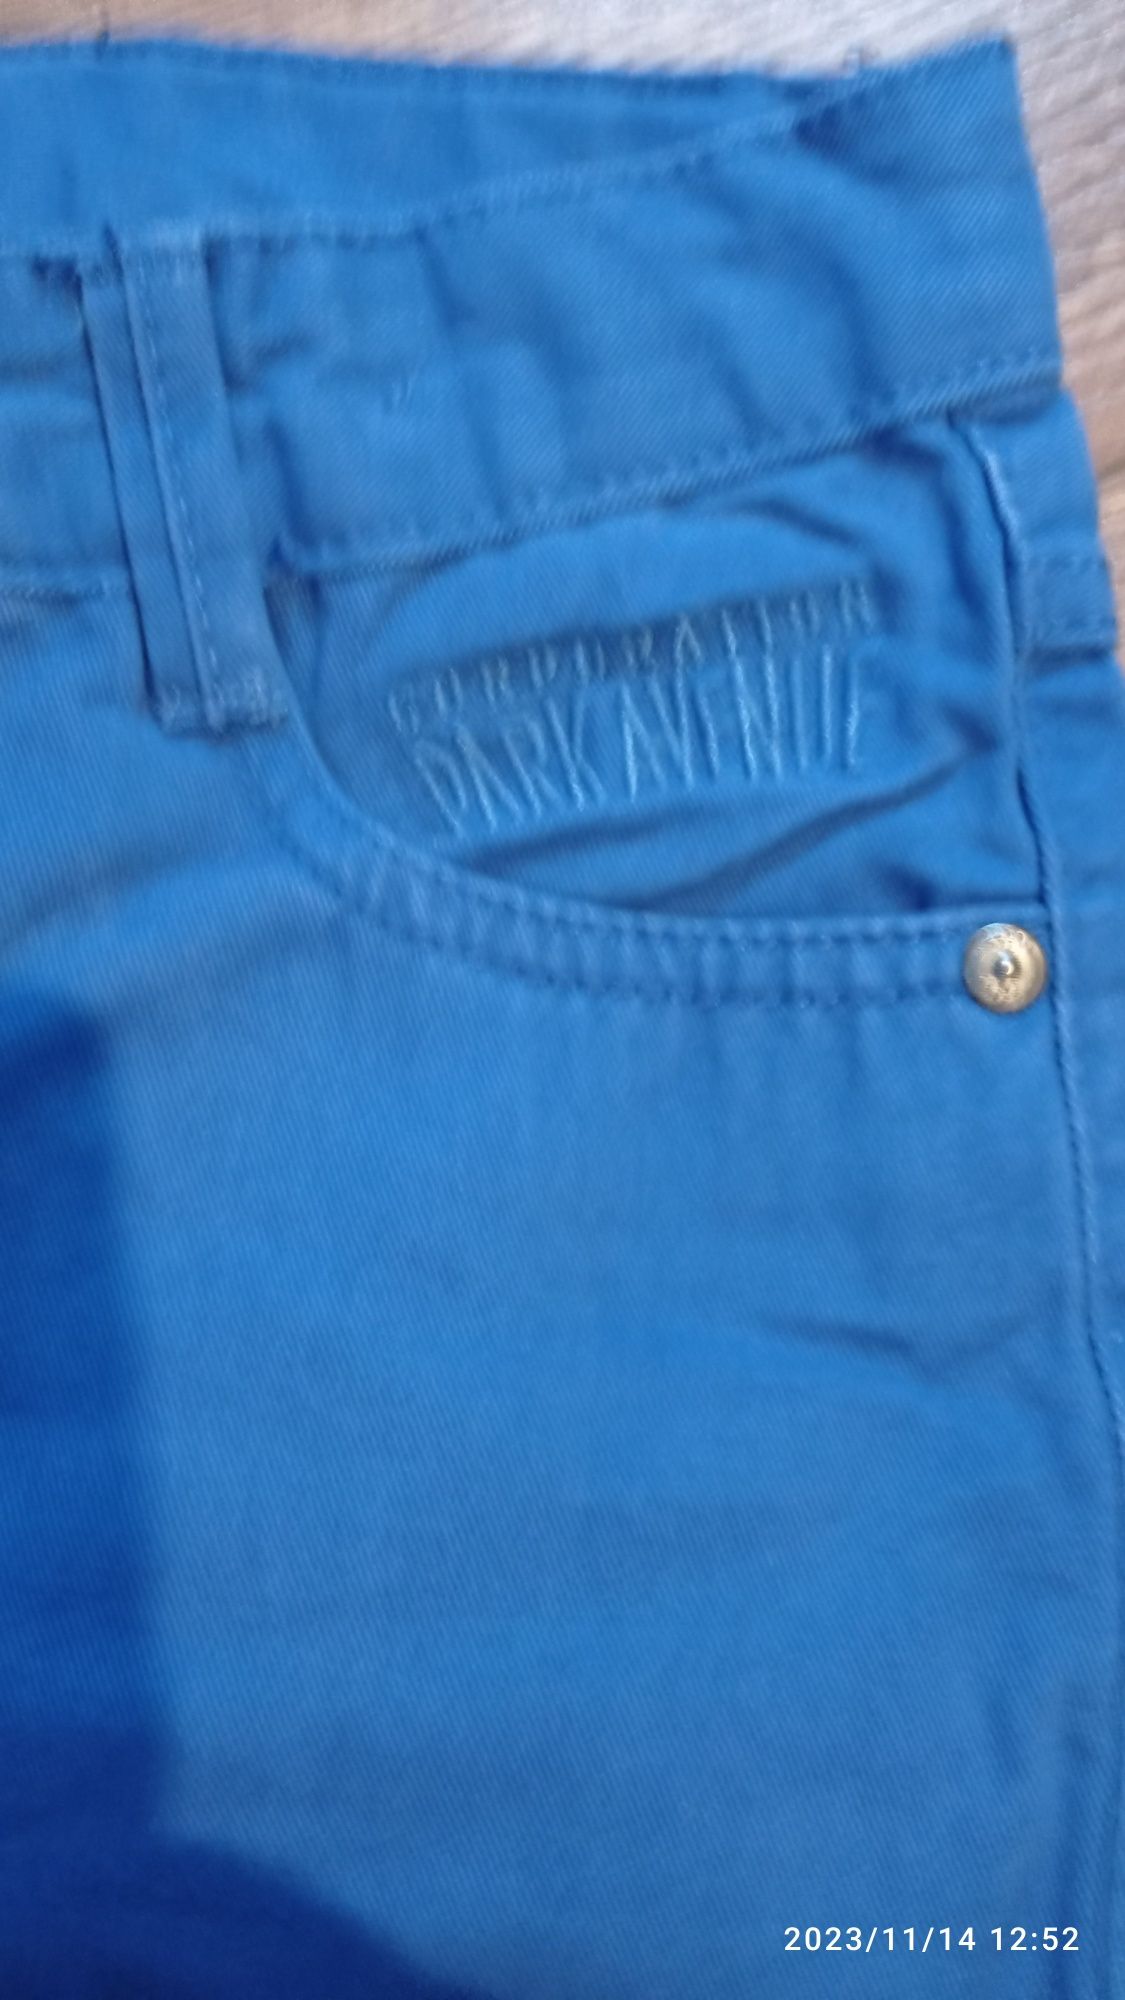 Spodnie Pepperts z Lidla niebieskie regulowane na gumce 128 -